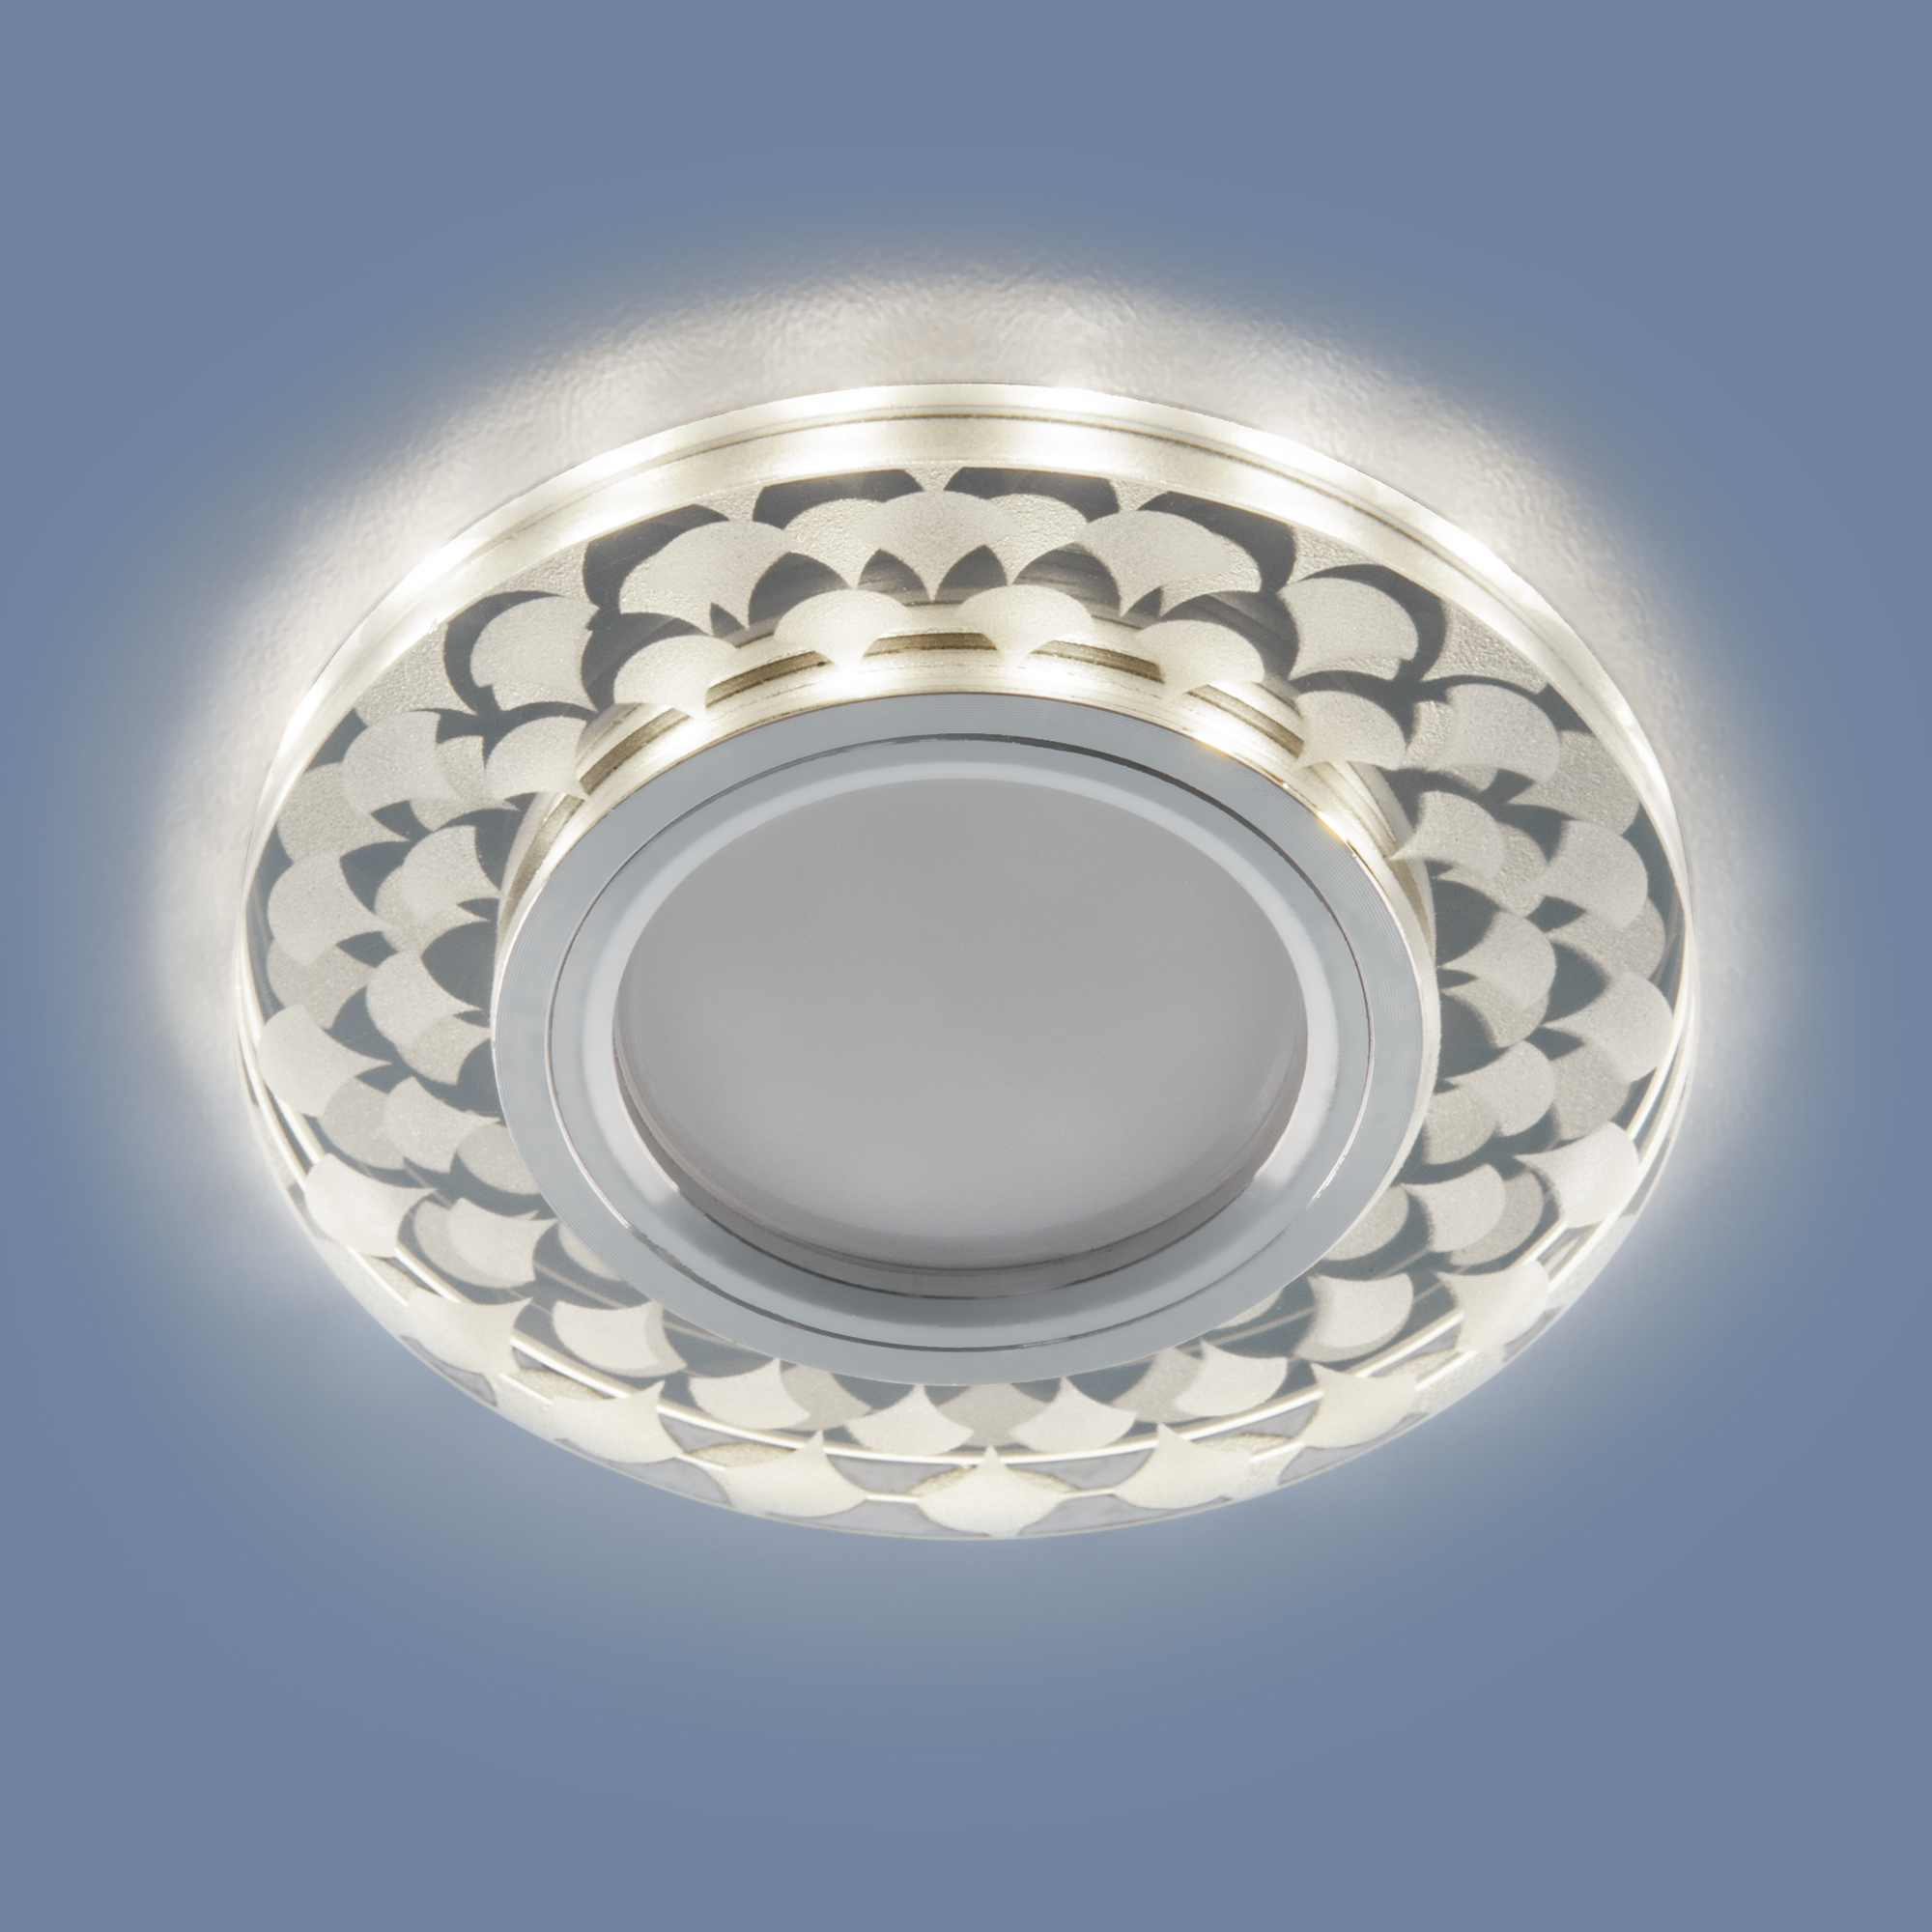 Встраиваемый светильник с LED подсветкой Elektrostandard 2247 MR16 SL/WH зеркальный/белый a047760